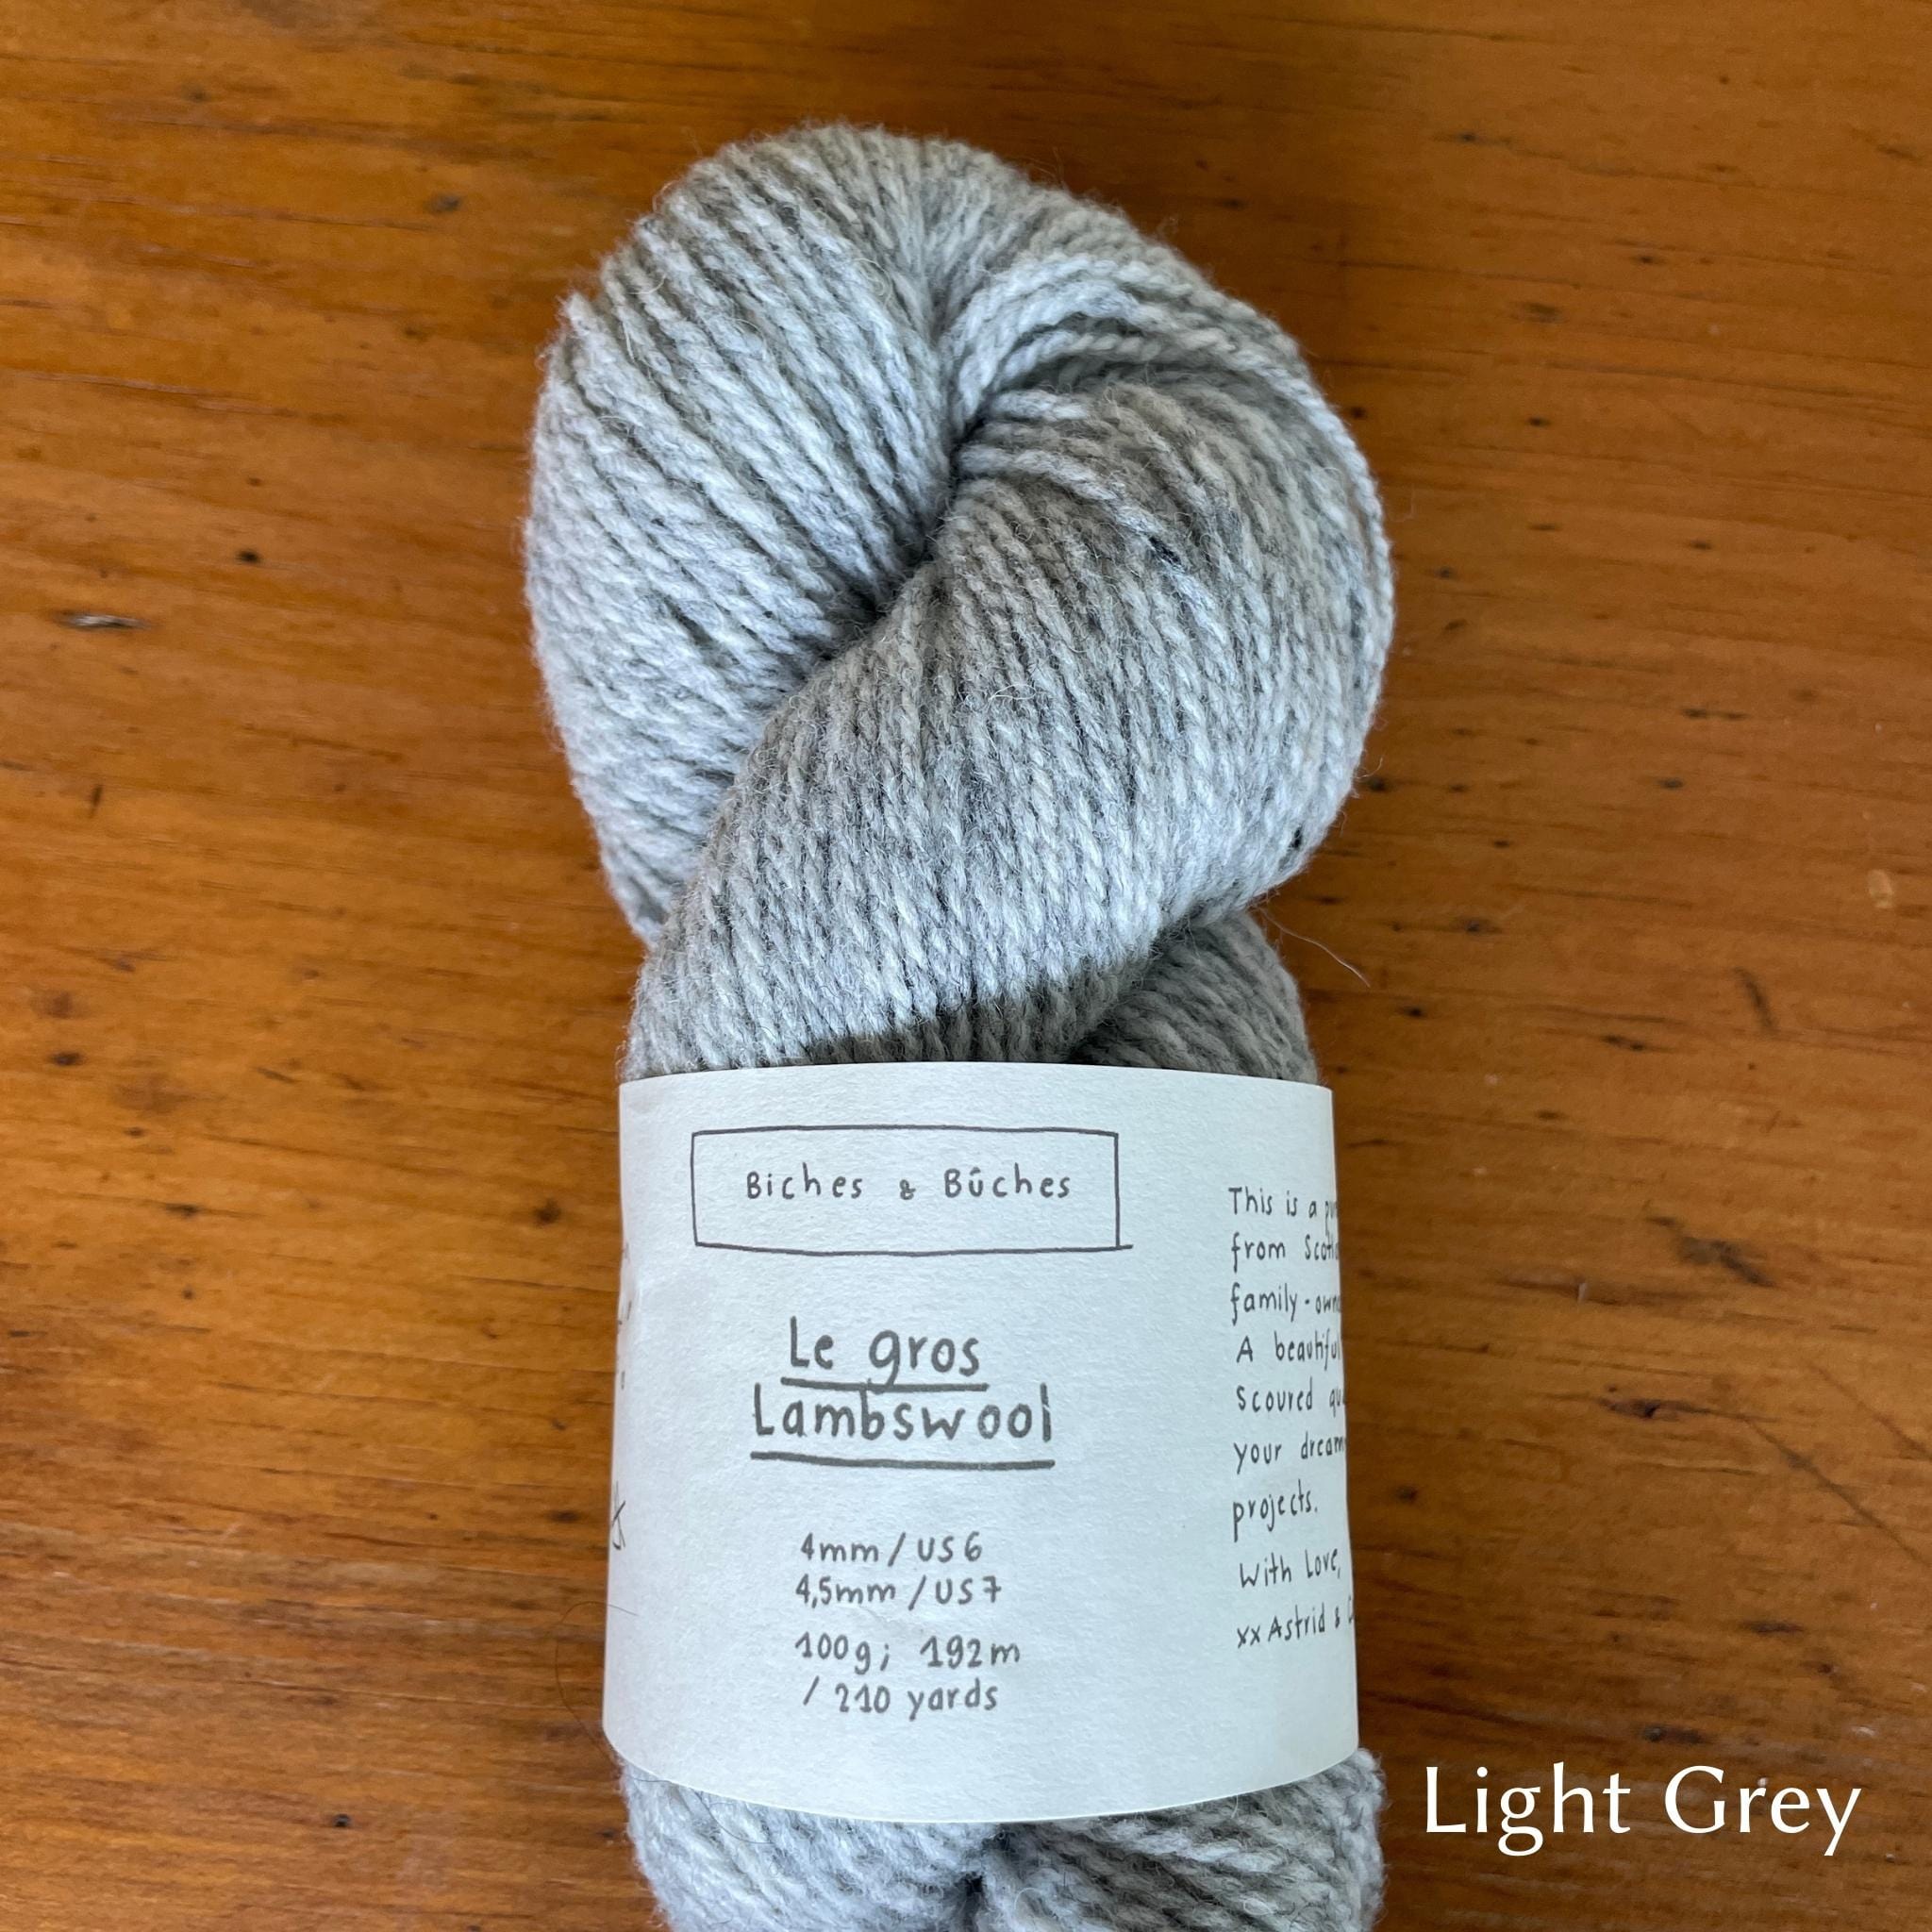 Skein of  Biches & Buches Les Gros Yarn in light grey.